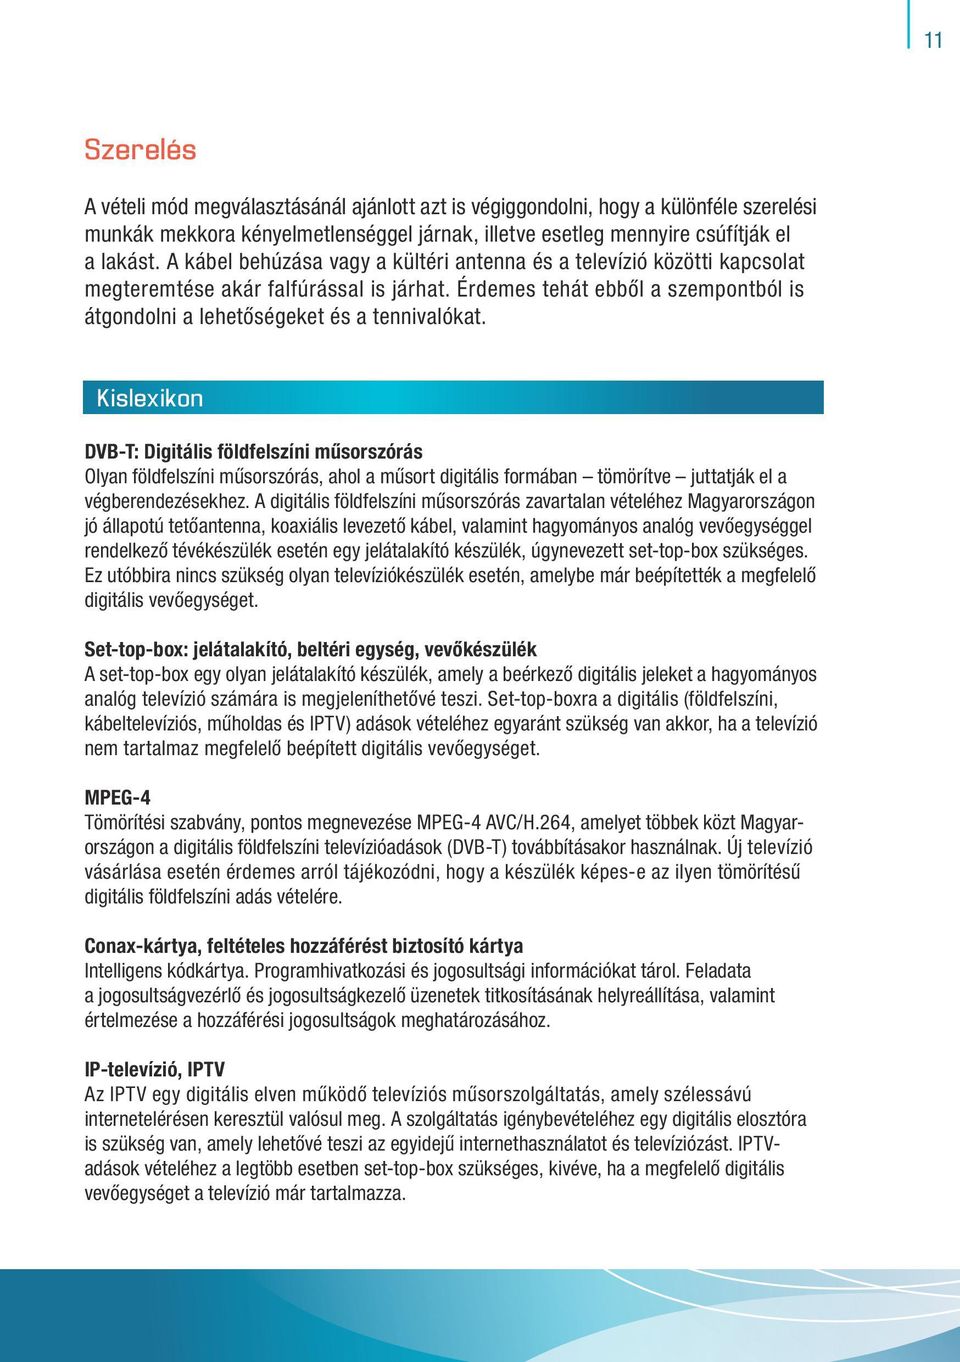 Kislexikon DVB-T: Digitális földfelszíni műsorszórás Olyan földfelszíni műsorszórás, ahol a műsort digitális formában tömörítve juttatják el a végberendezésekhez.